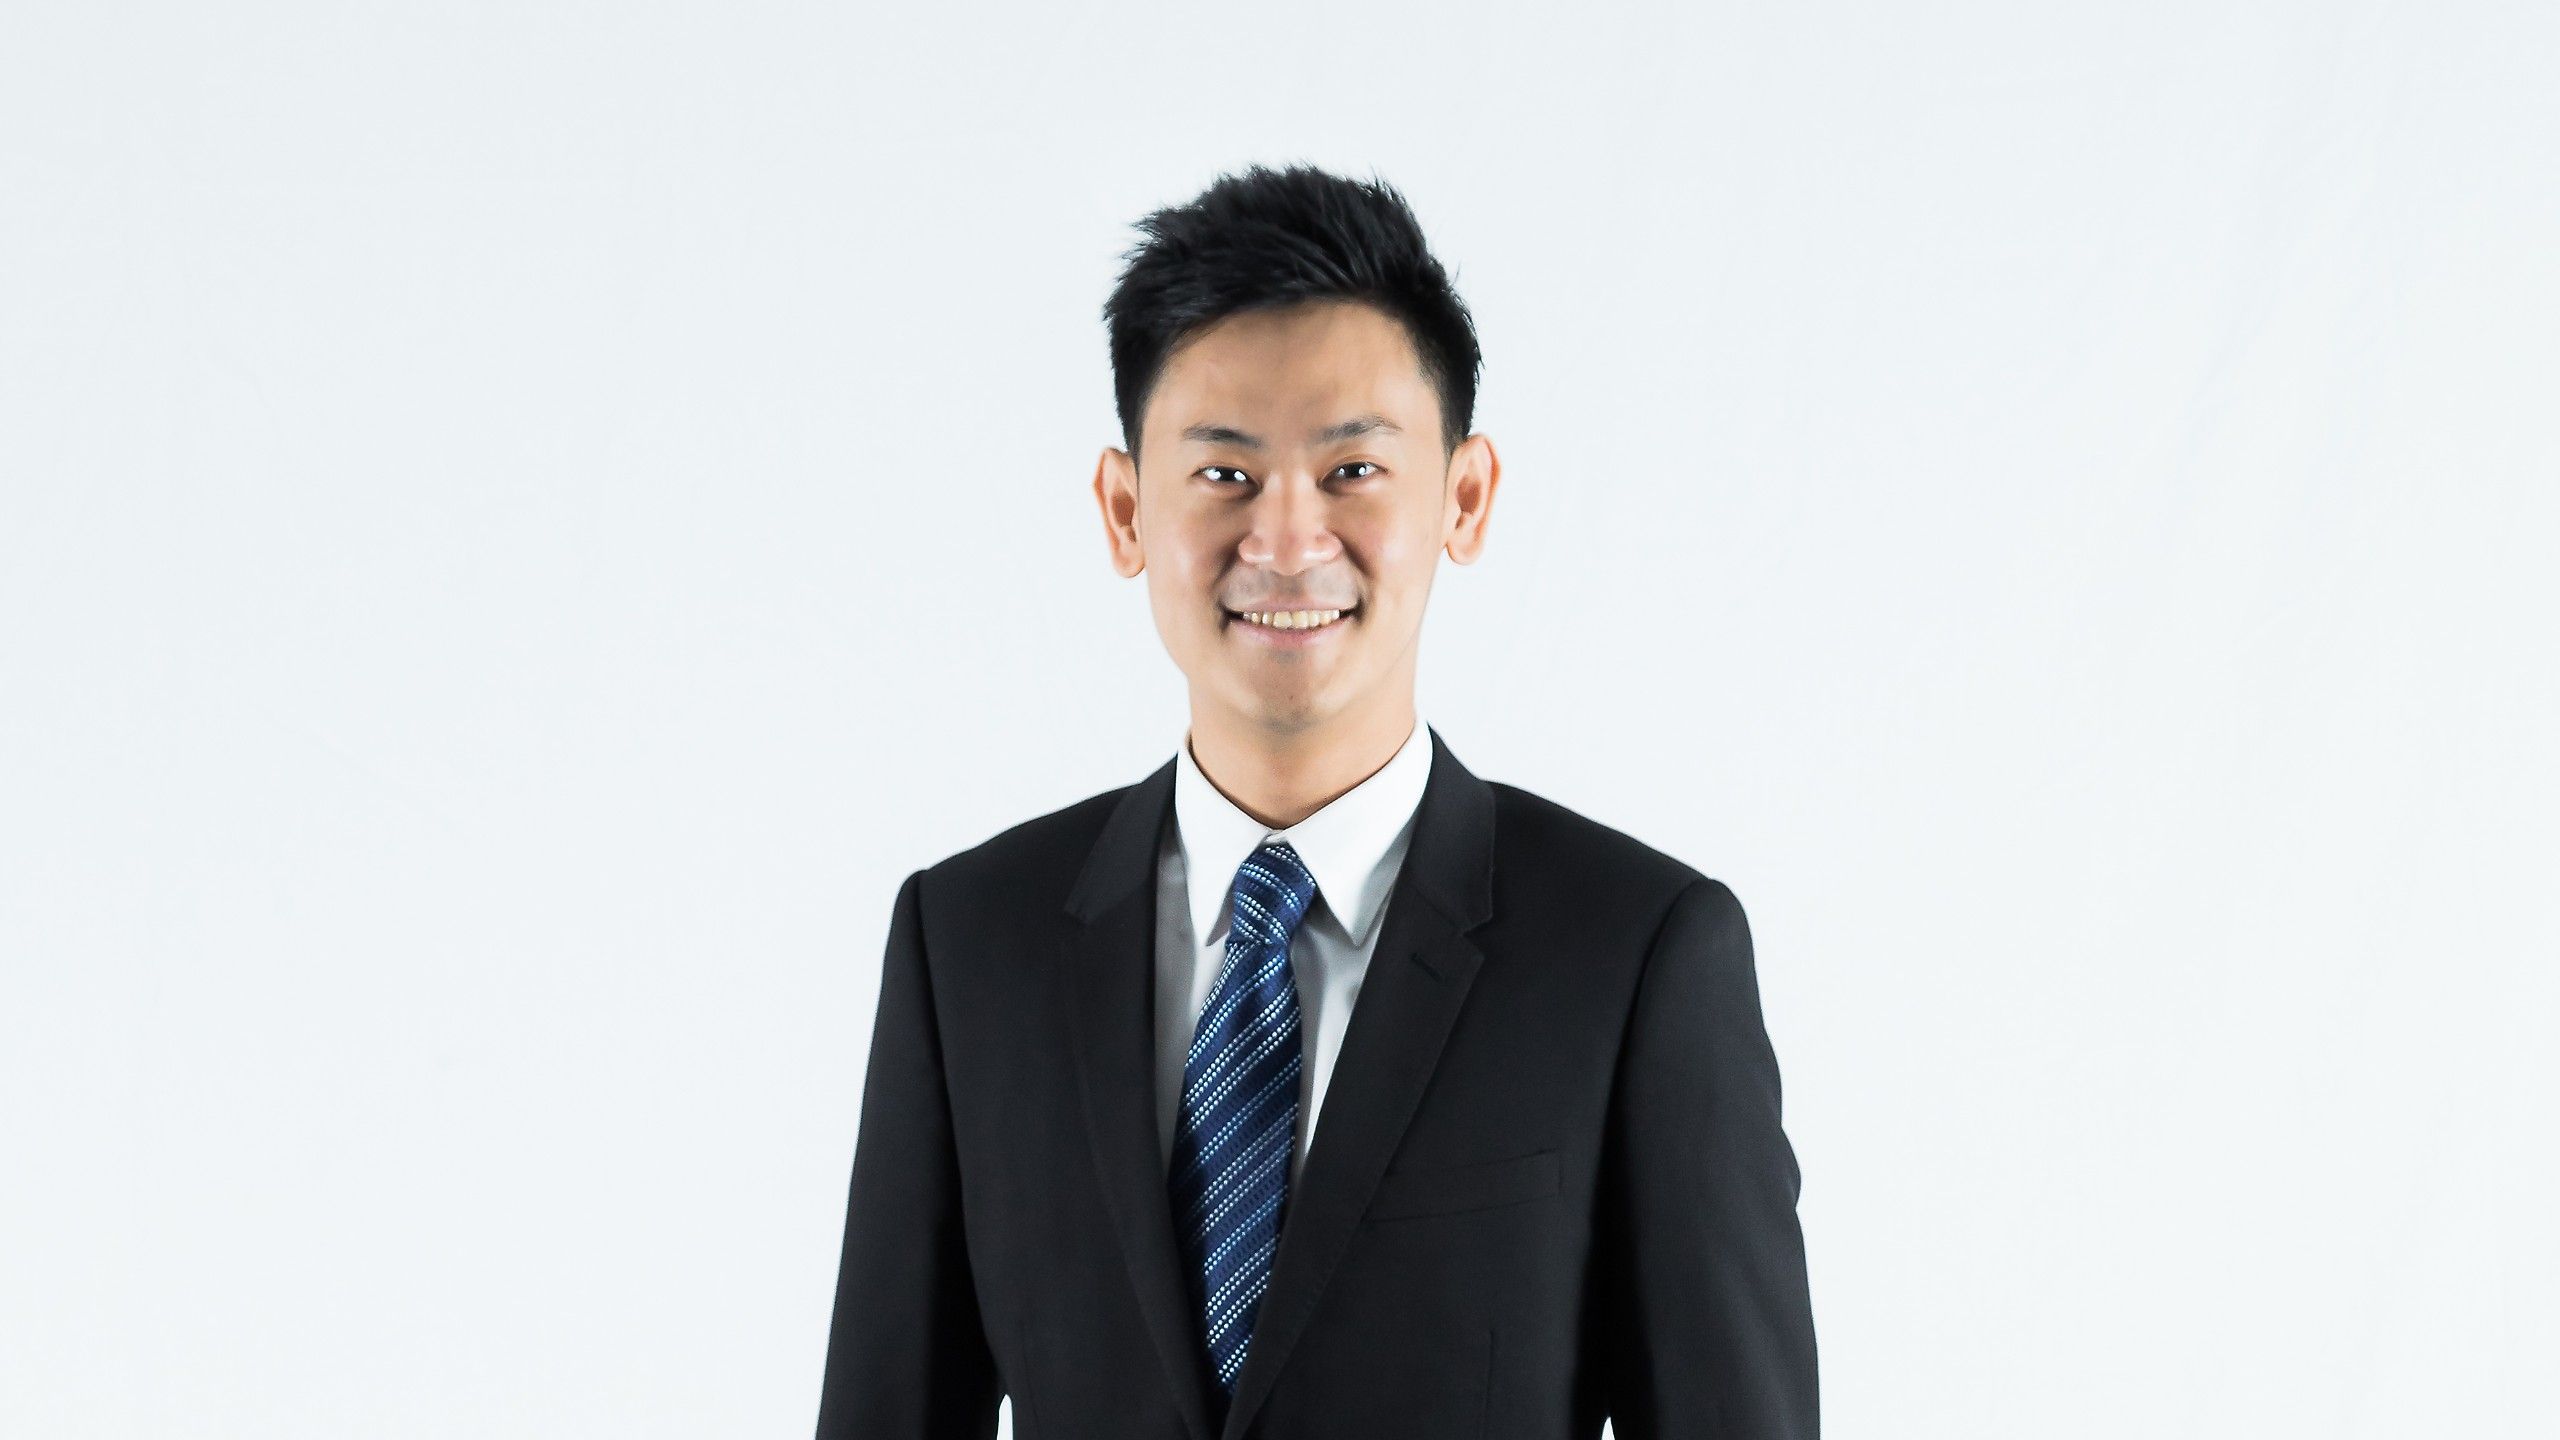 Swinburne alumnus and Electrical Engineer, Jason Yeo Kok Seng